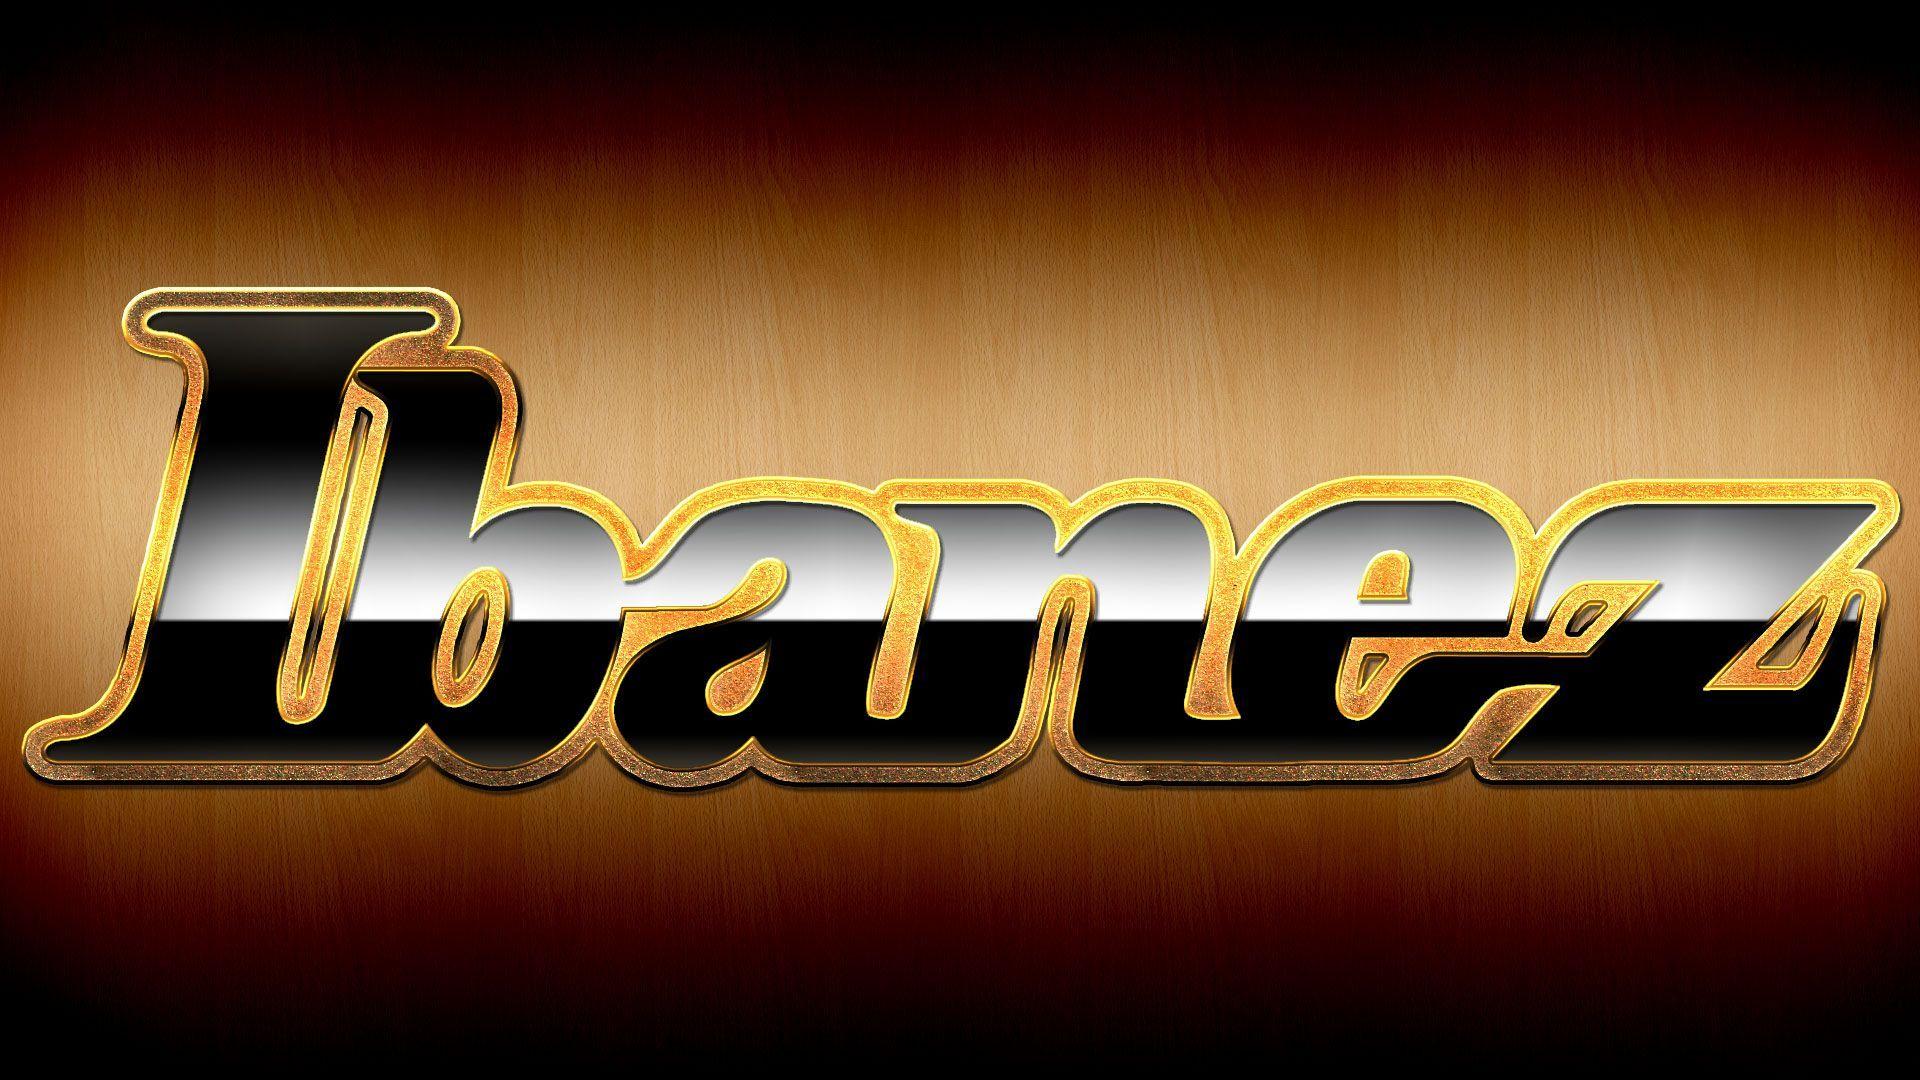 Ibanez Logo - Ibanez guitar logo. Ibanez Guitars. Guitar, Guitar logo